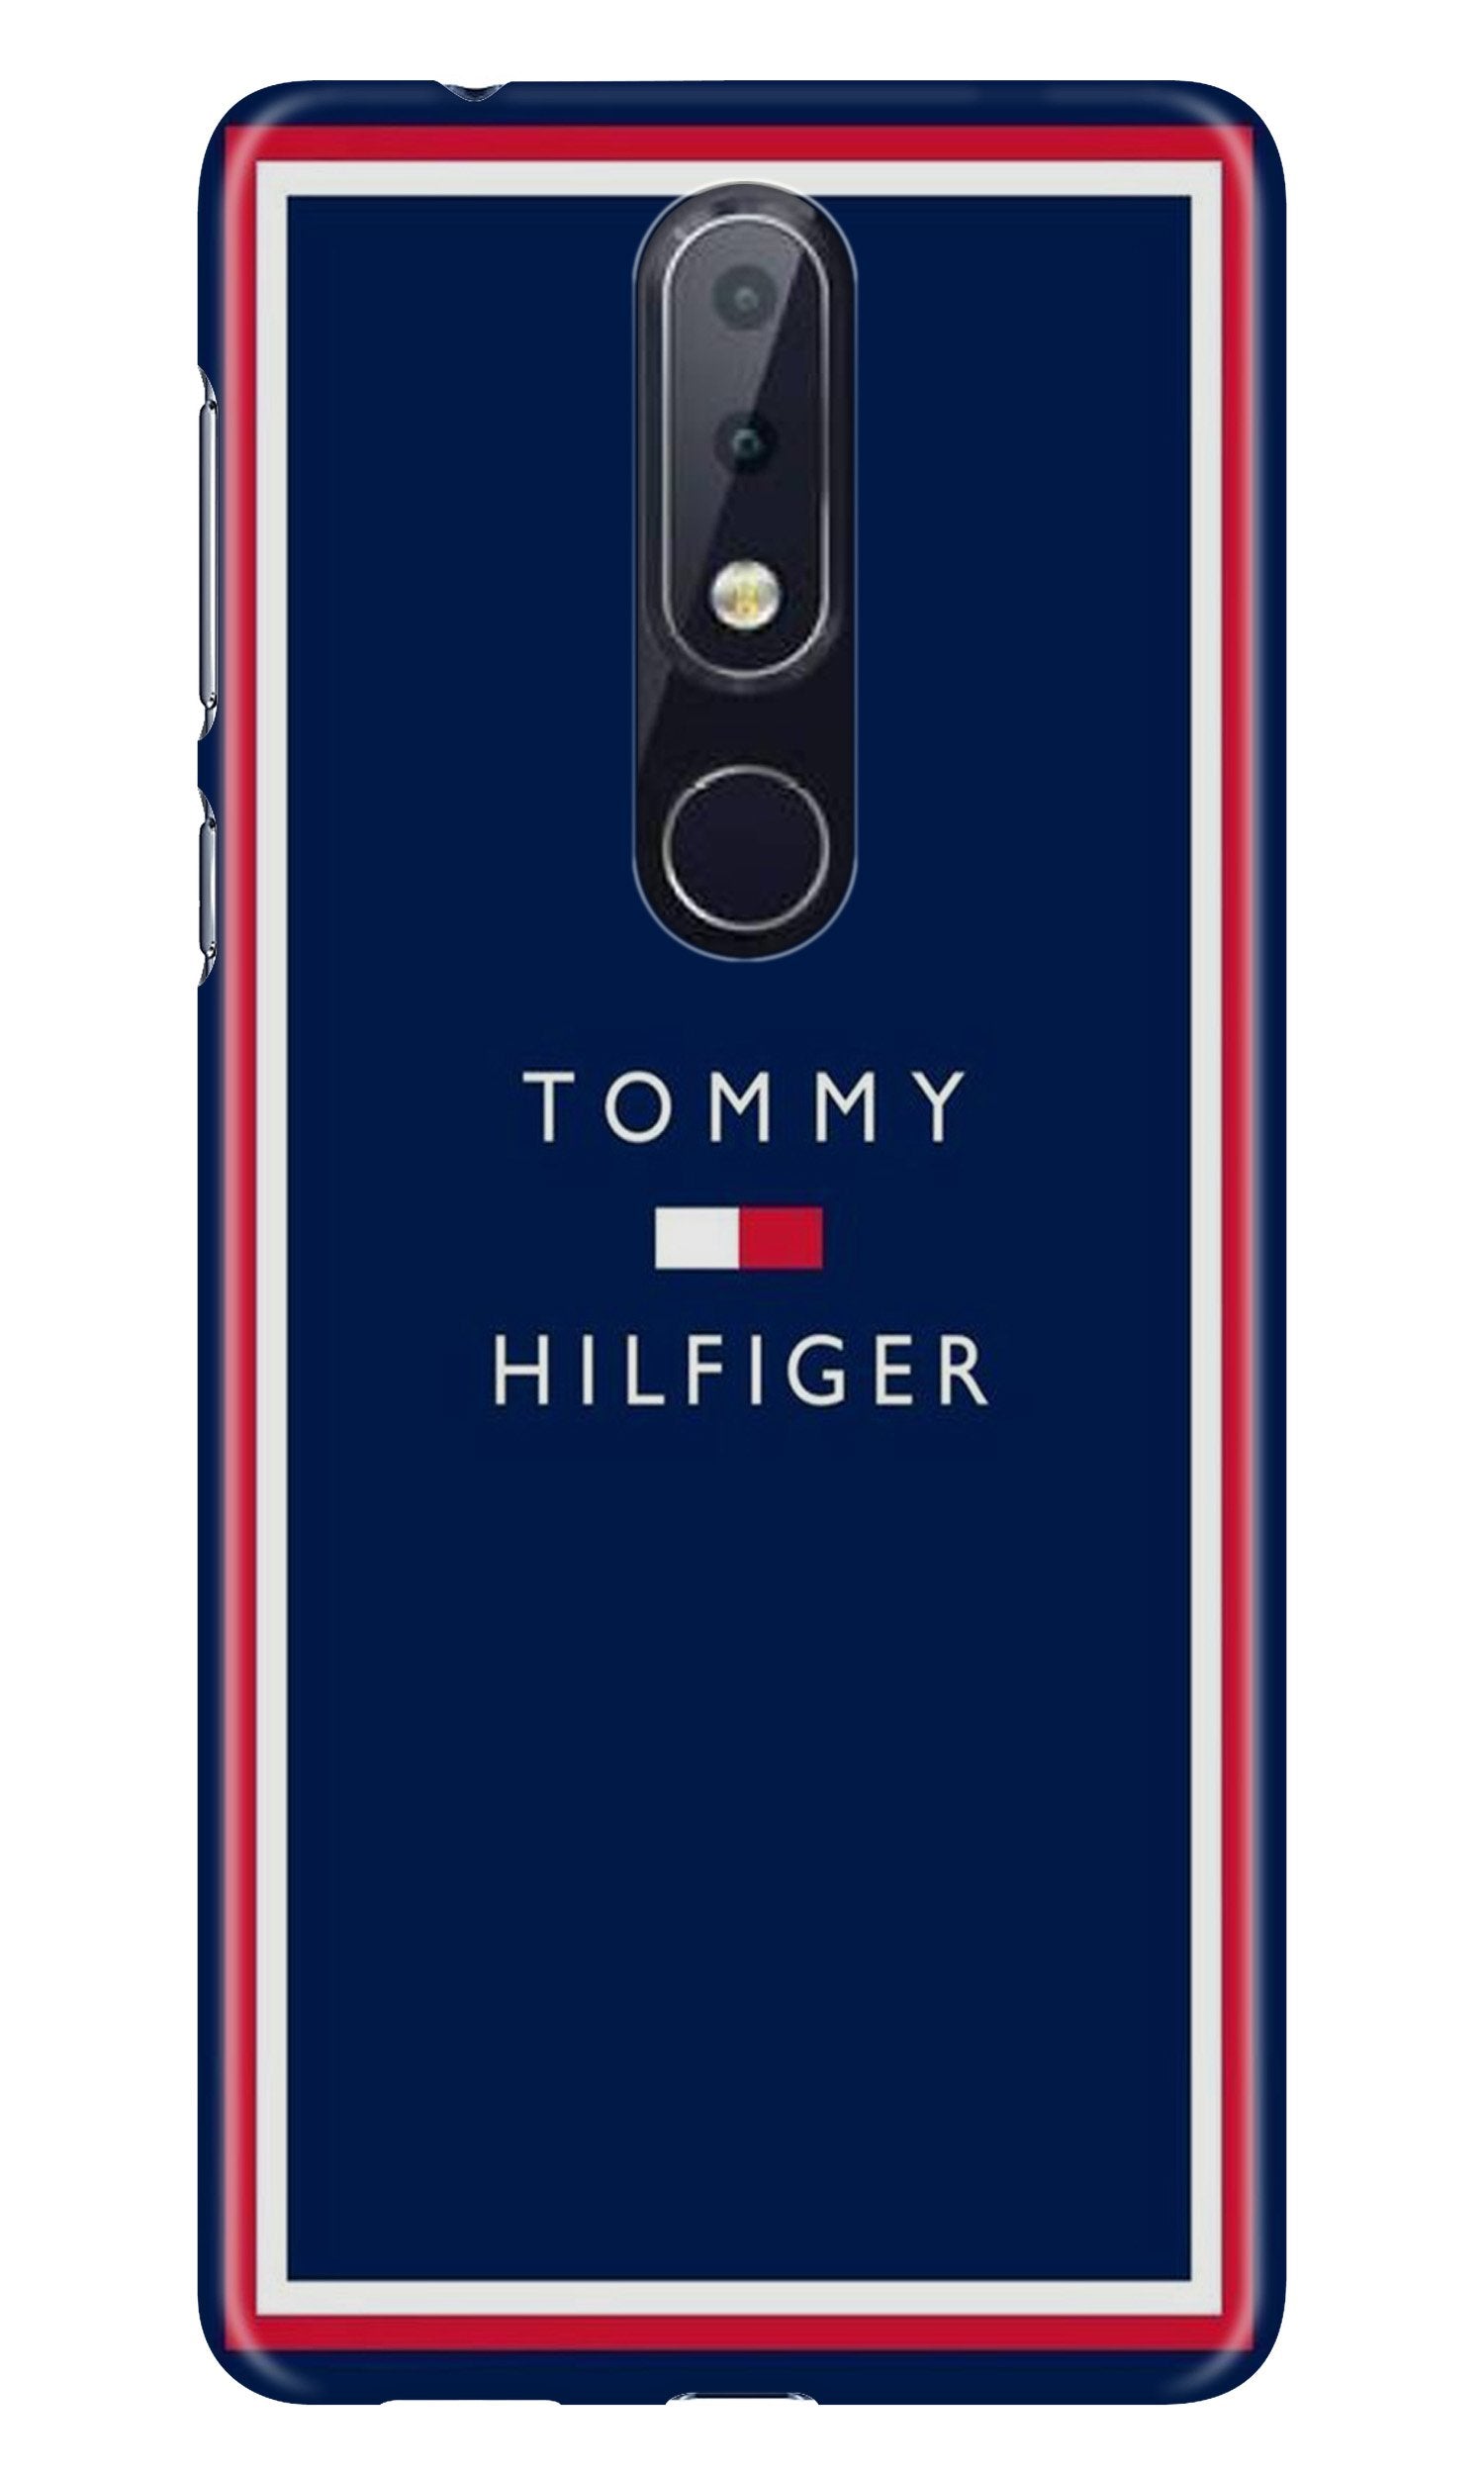 Tommy Hilfiger Case for Nokia 7.1 (Design No. 275)